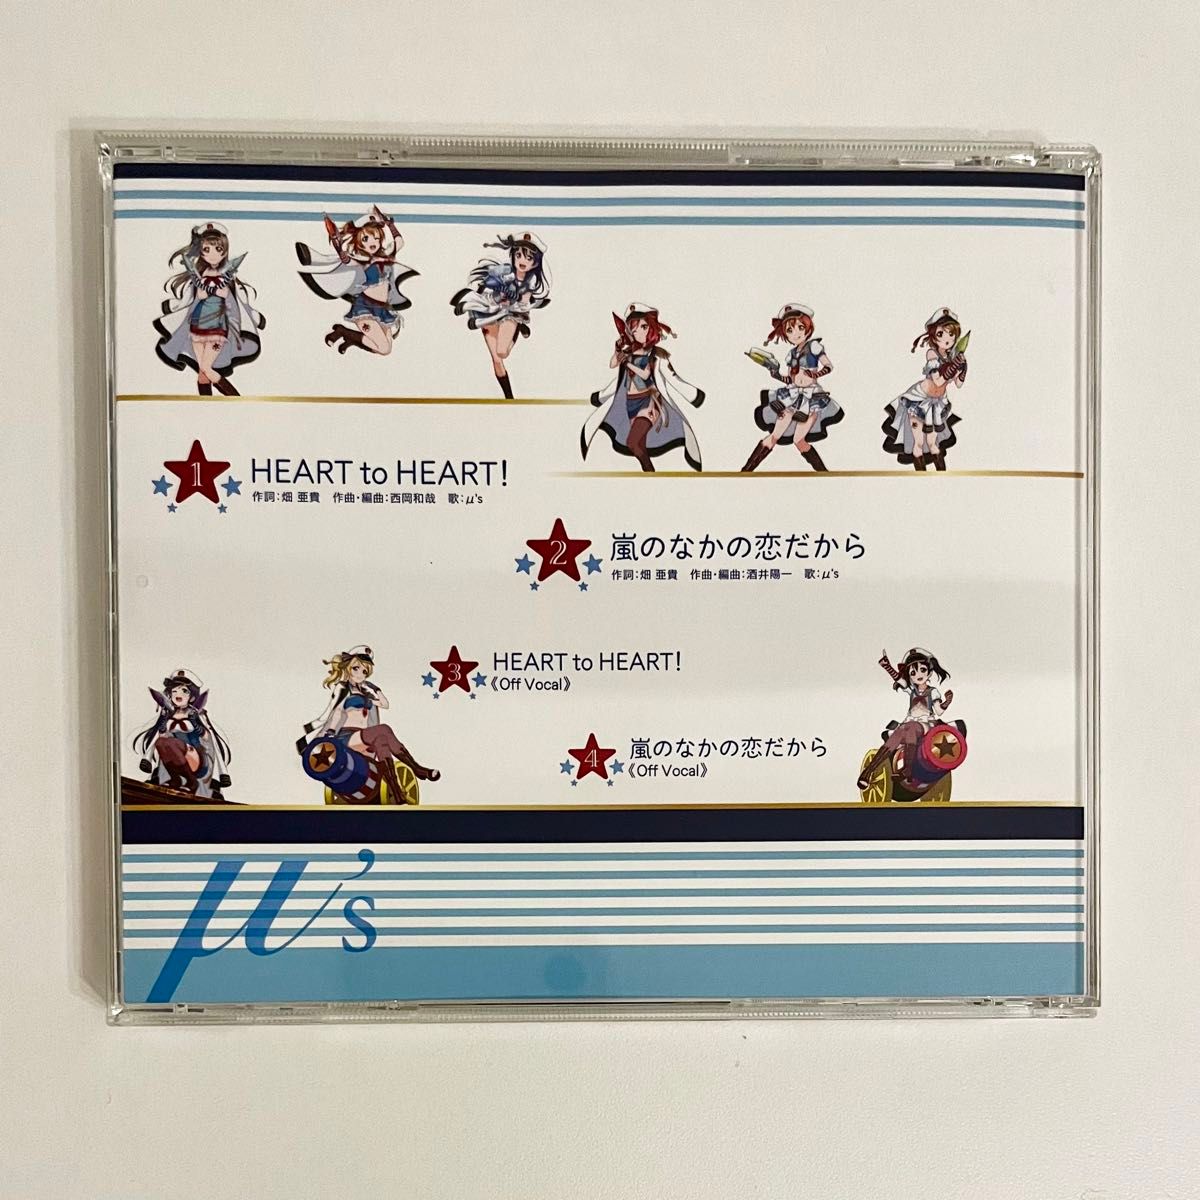 「「ラブライブ! スクールアイドルフェスティバル」コラボシングル～HEART to HEART!/μ's」 CD